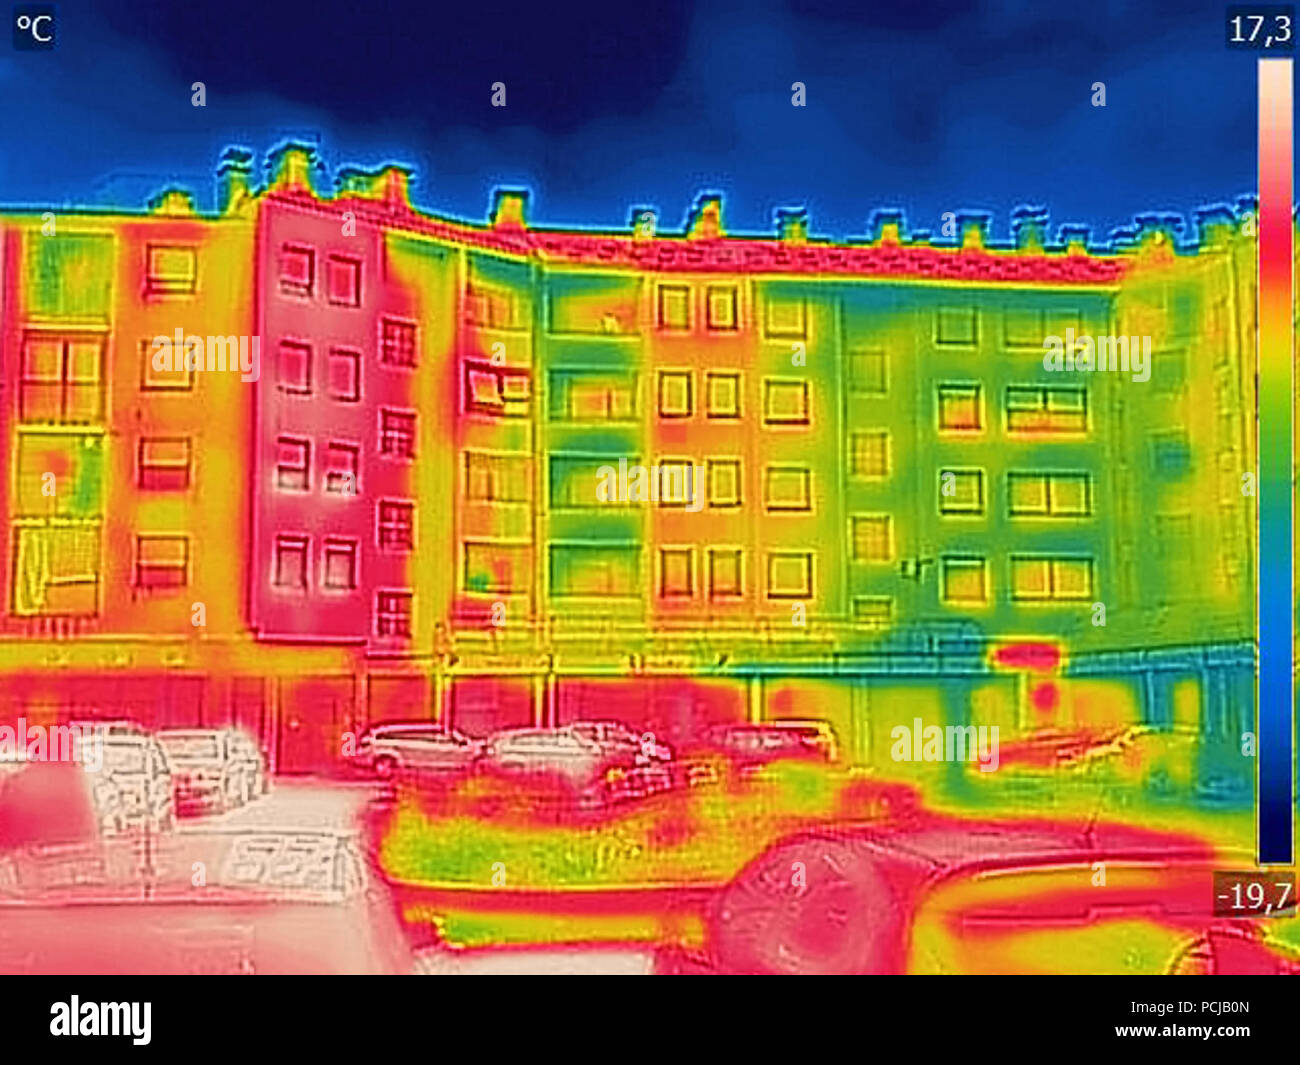 Erkennung von Verlustwärme außerhalb mit Infrarot Wärmebildkamera Gebäude Stockfoto